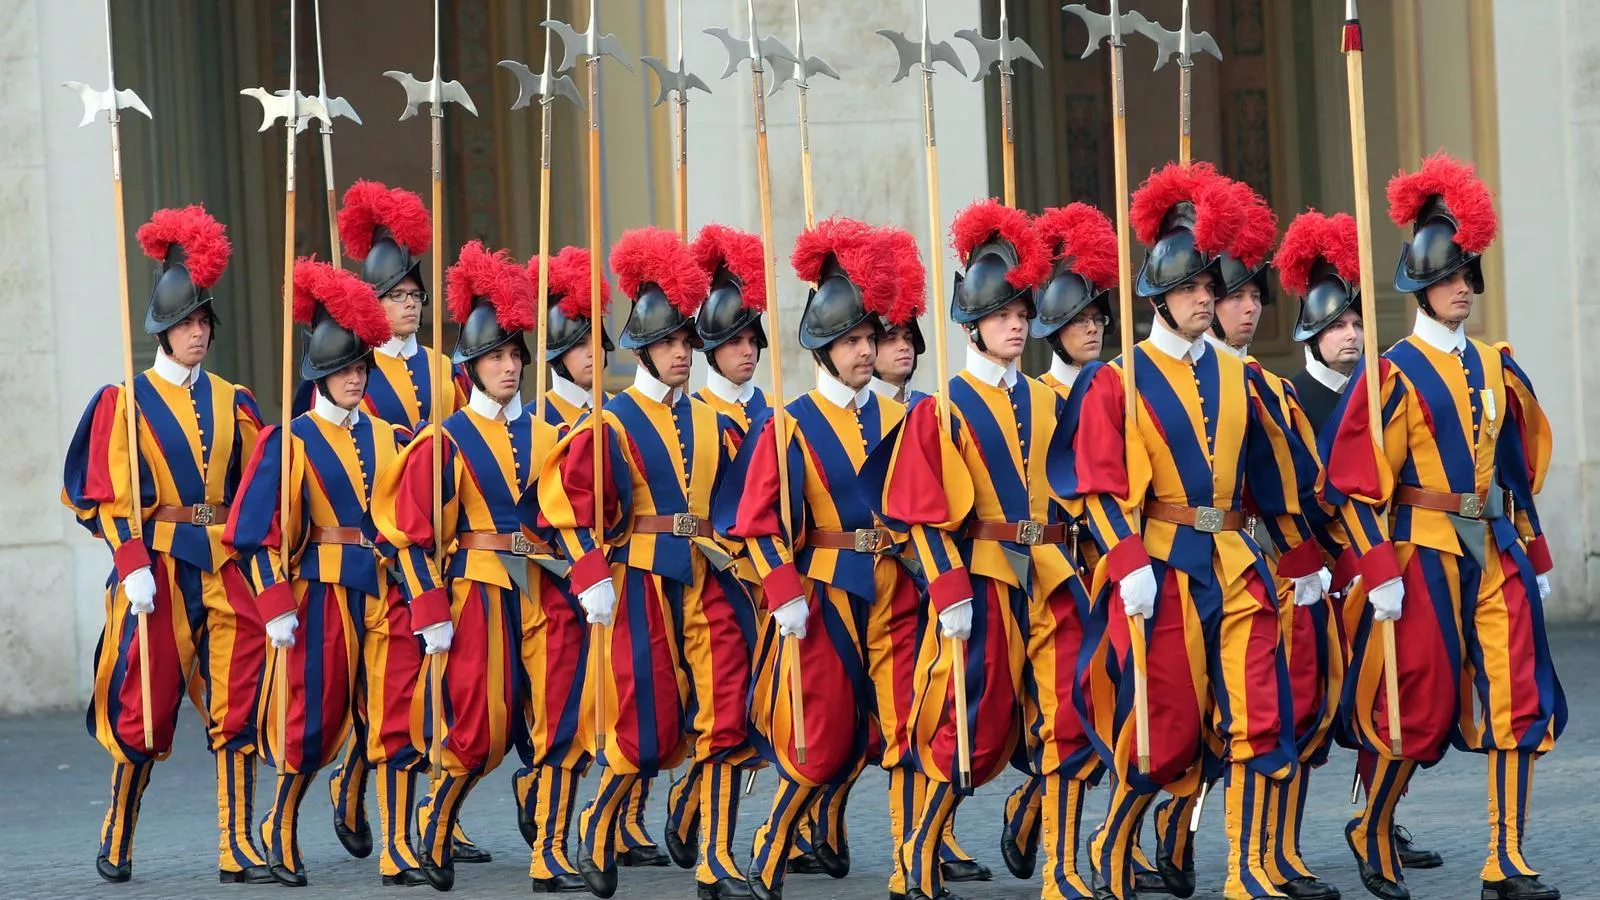 La funció principal de la Guàrdia Suïssa era protegir el papa, però amb el pas del temps va adoptar un rol cerimonial i era present en els actes litúrgics més destacats